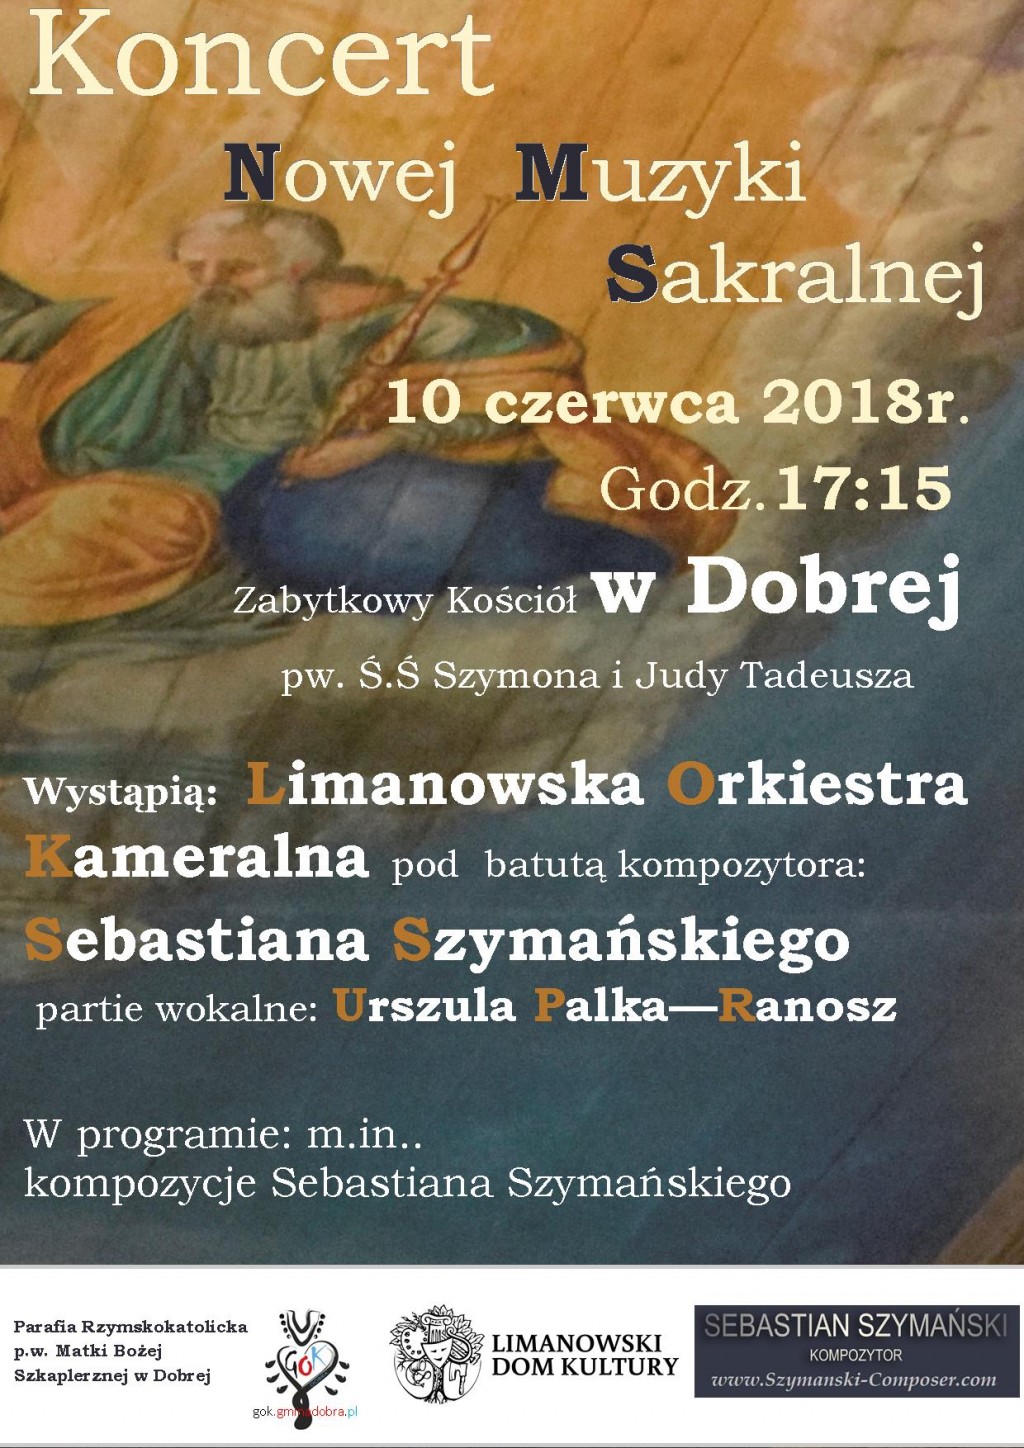 Koncert Limanowskiej Orkiestry Kameralnej - 10 czerwca 2018 r.